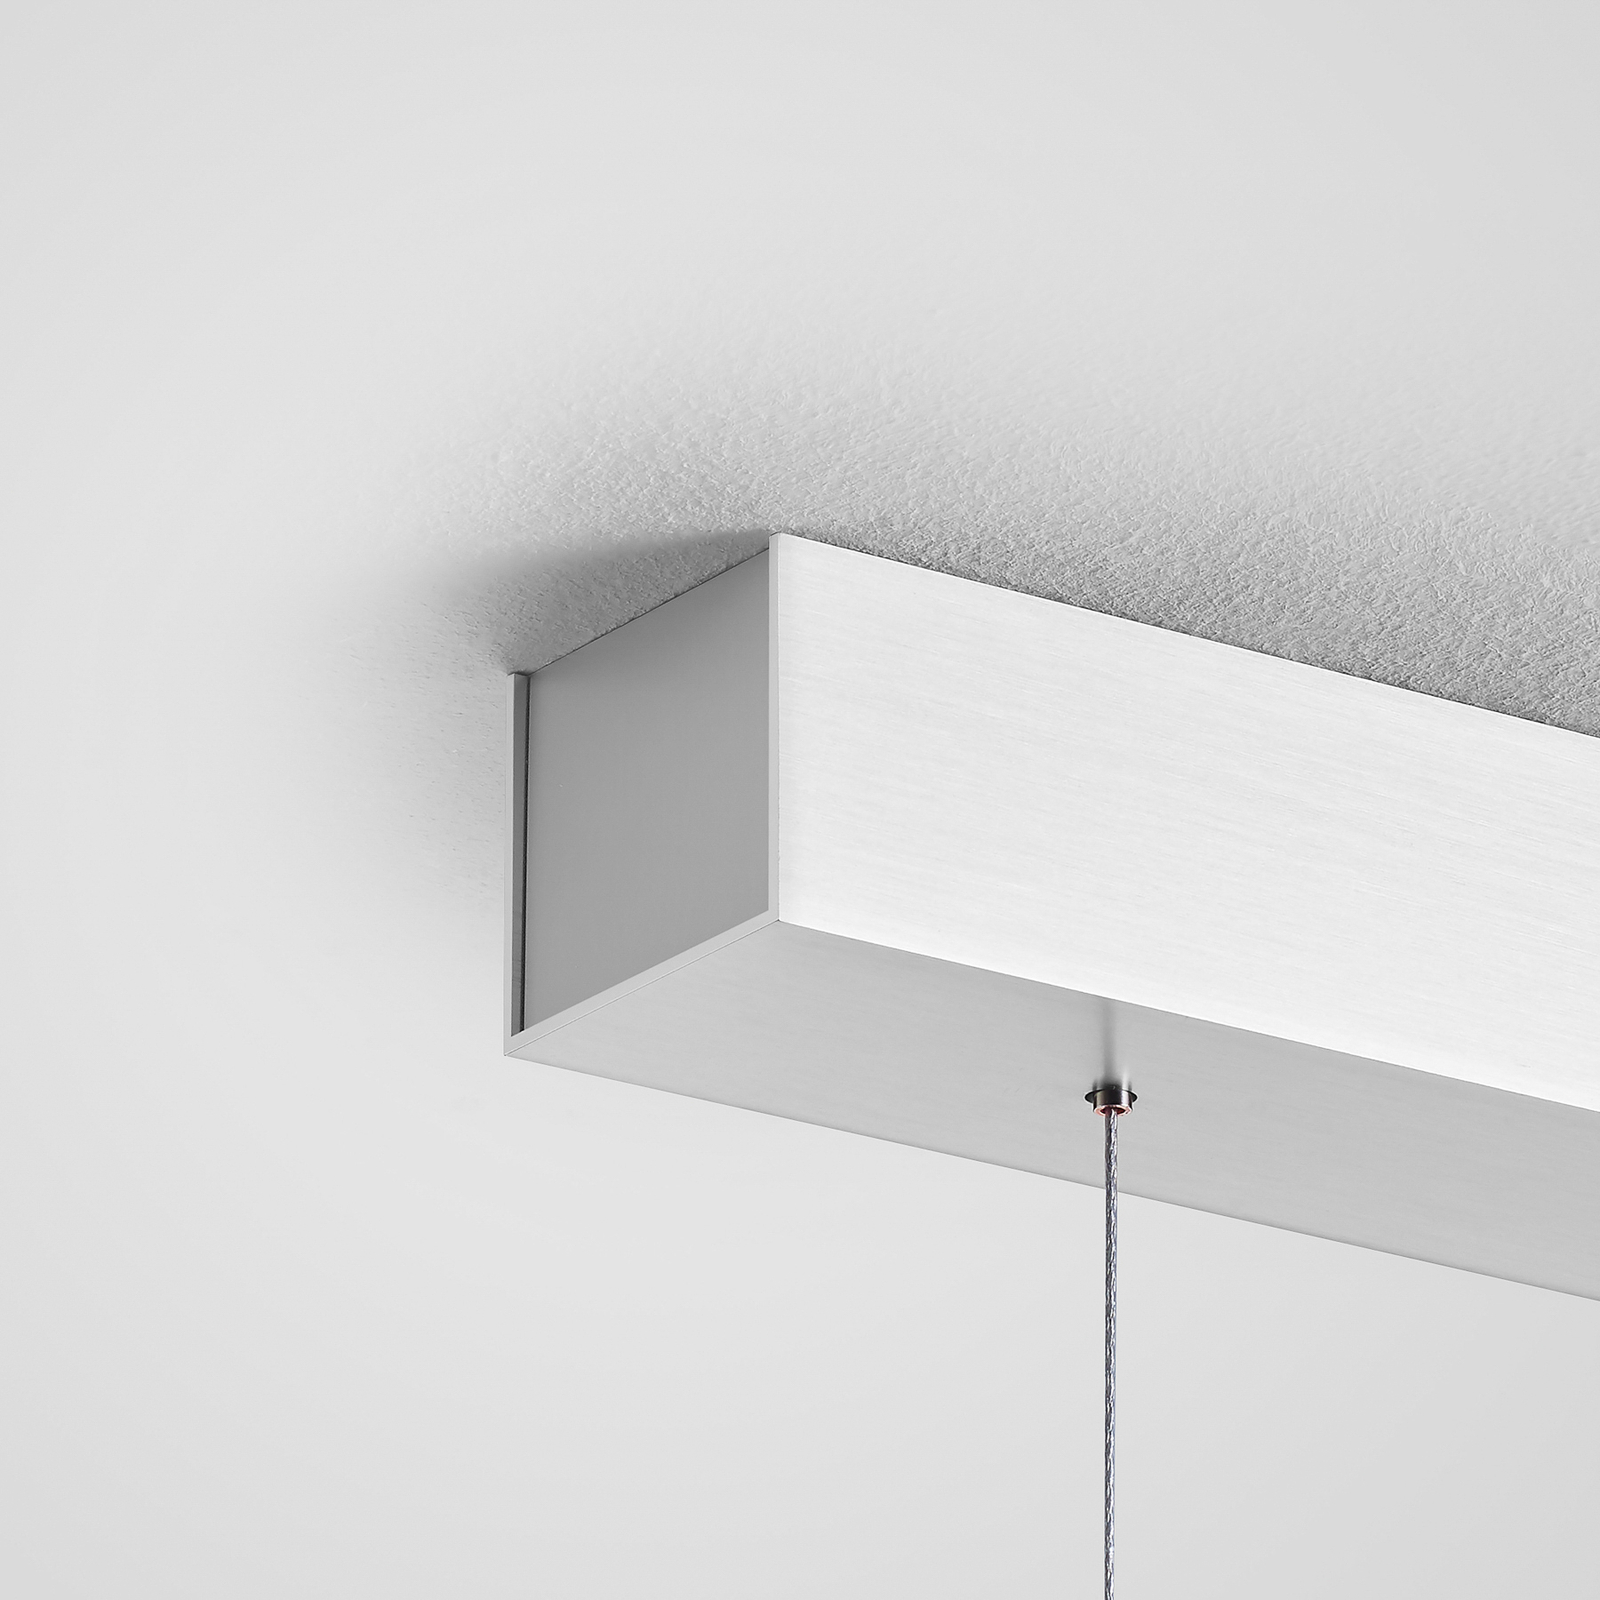 Quitani Keijo LED-es függesztett lámpa, nikkel/tölgy, 143 cm